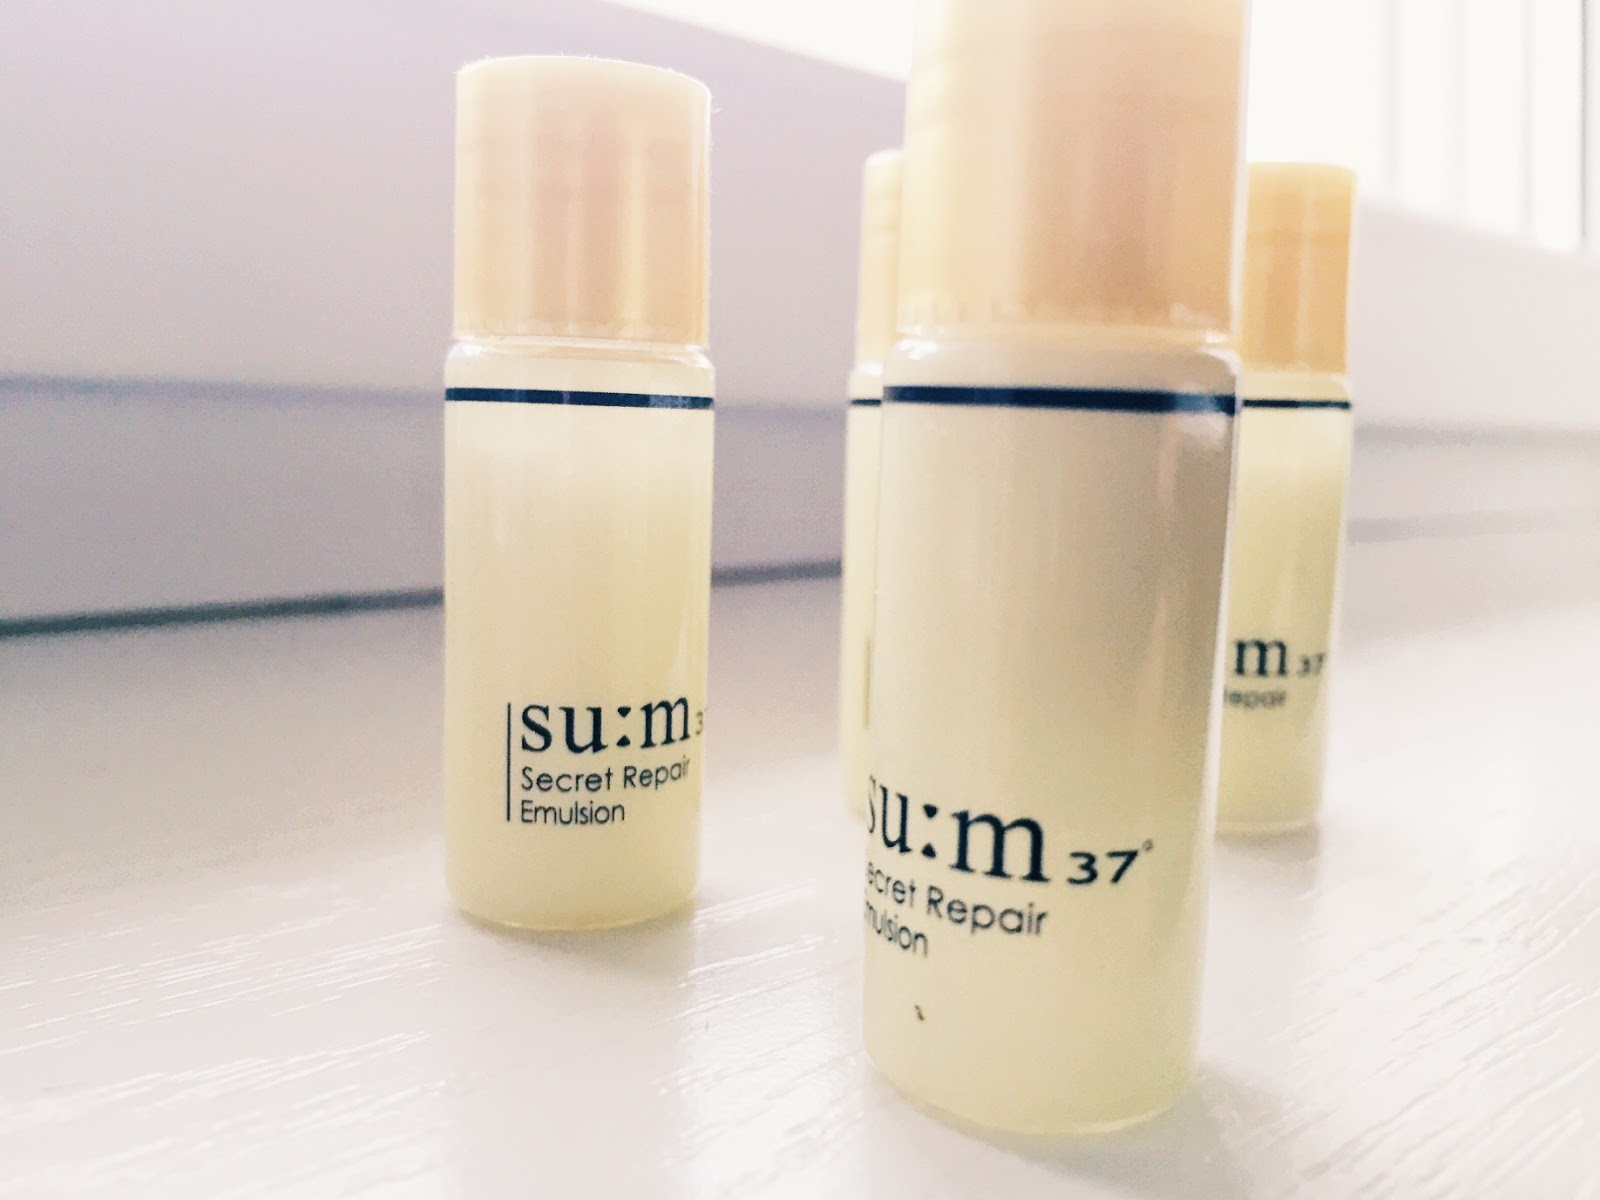 de.la.seoul Review Sum37 Secret Repair Emulsion